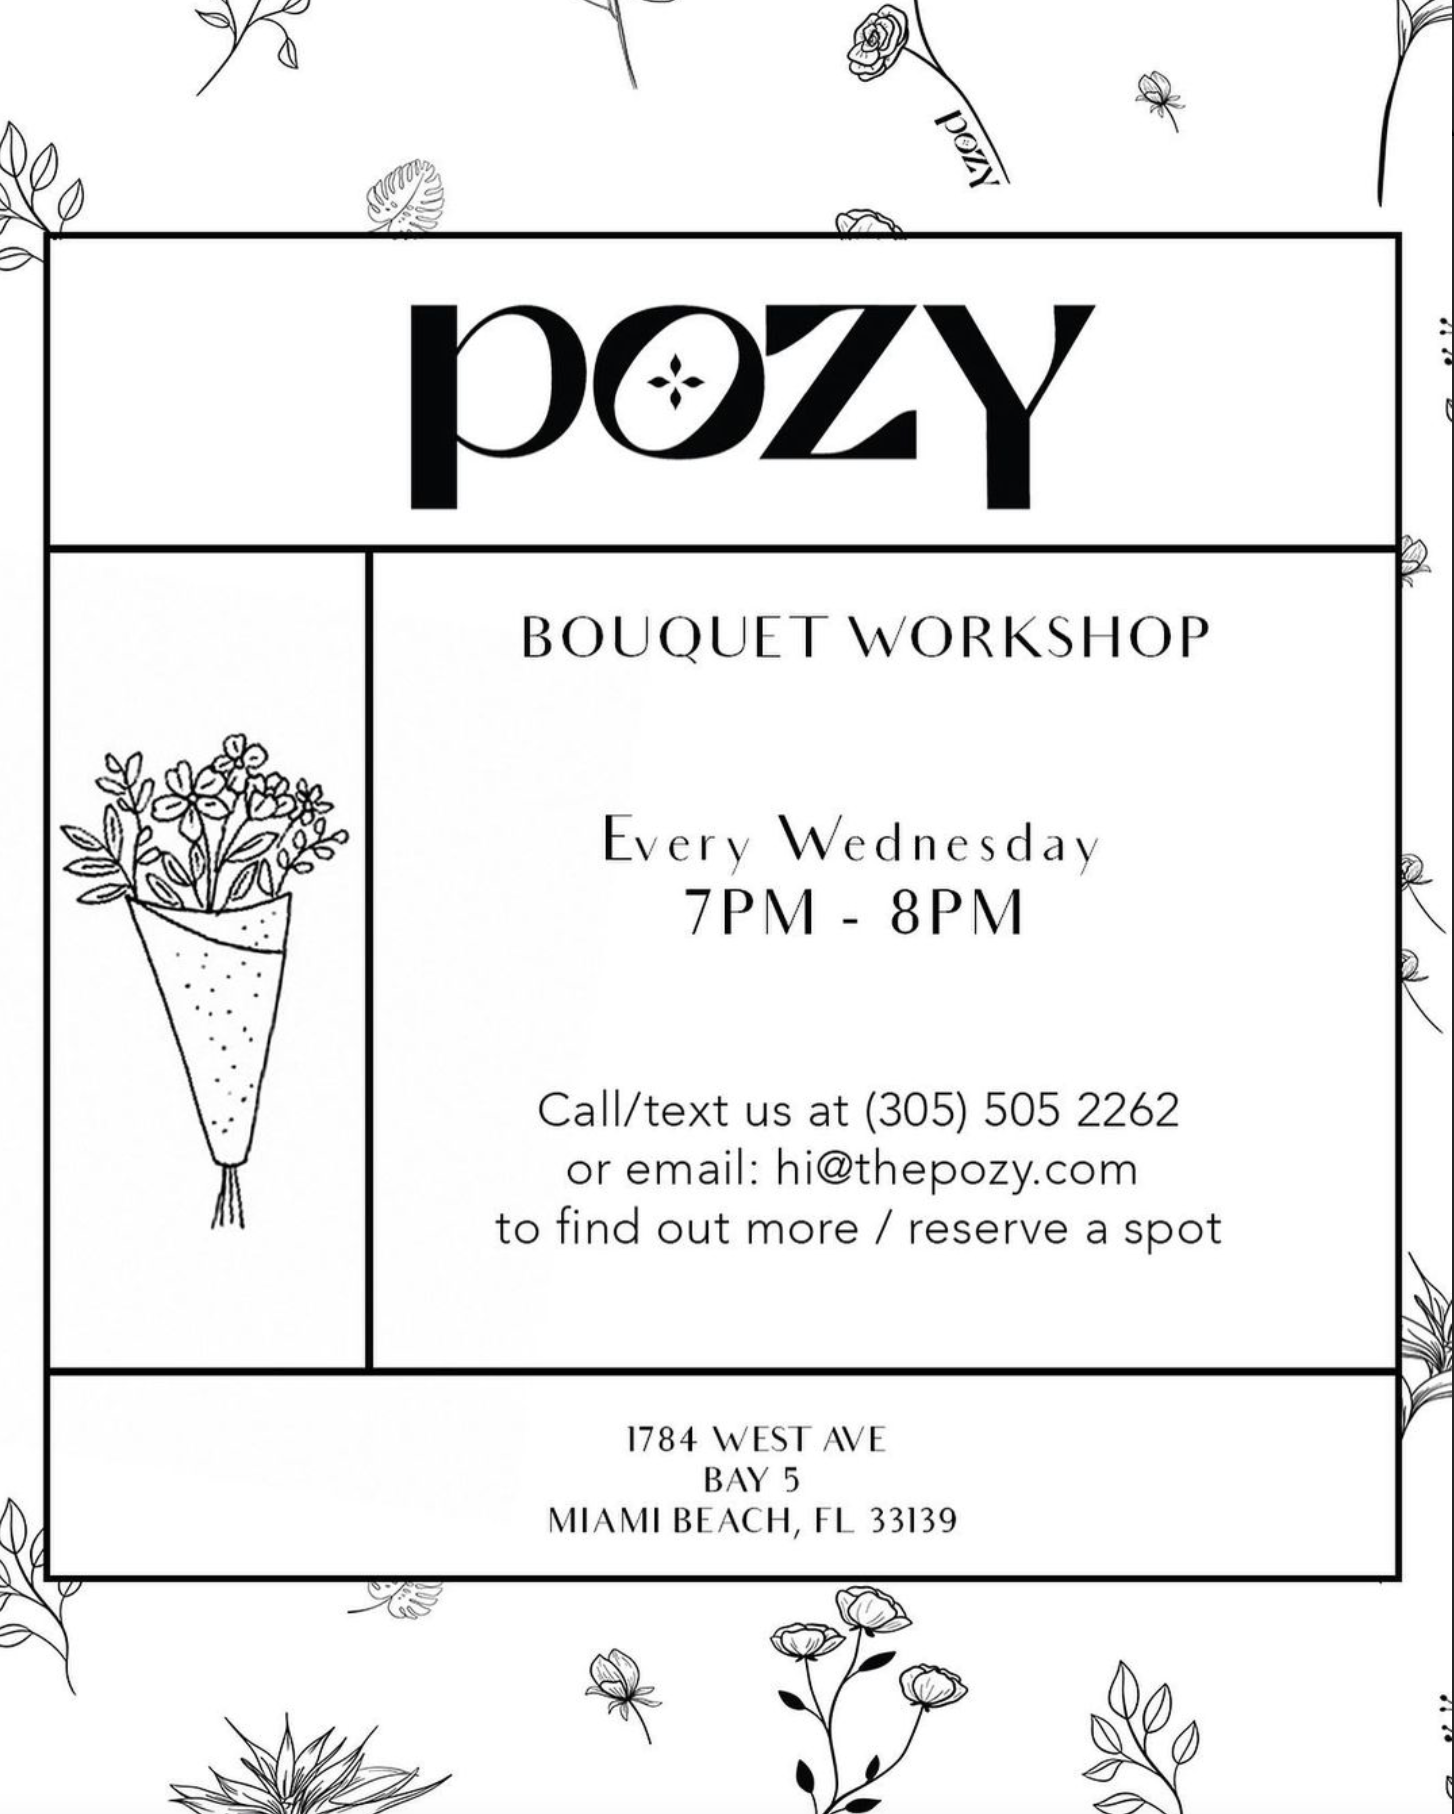 Bouquet Workshop